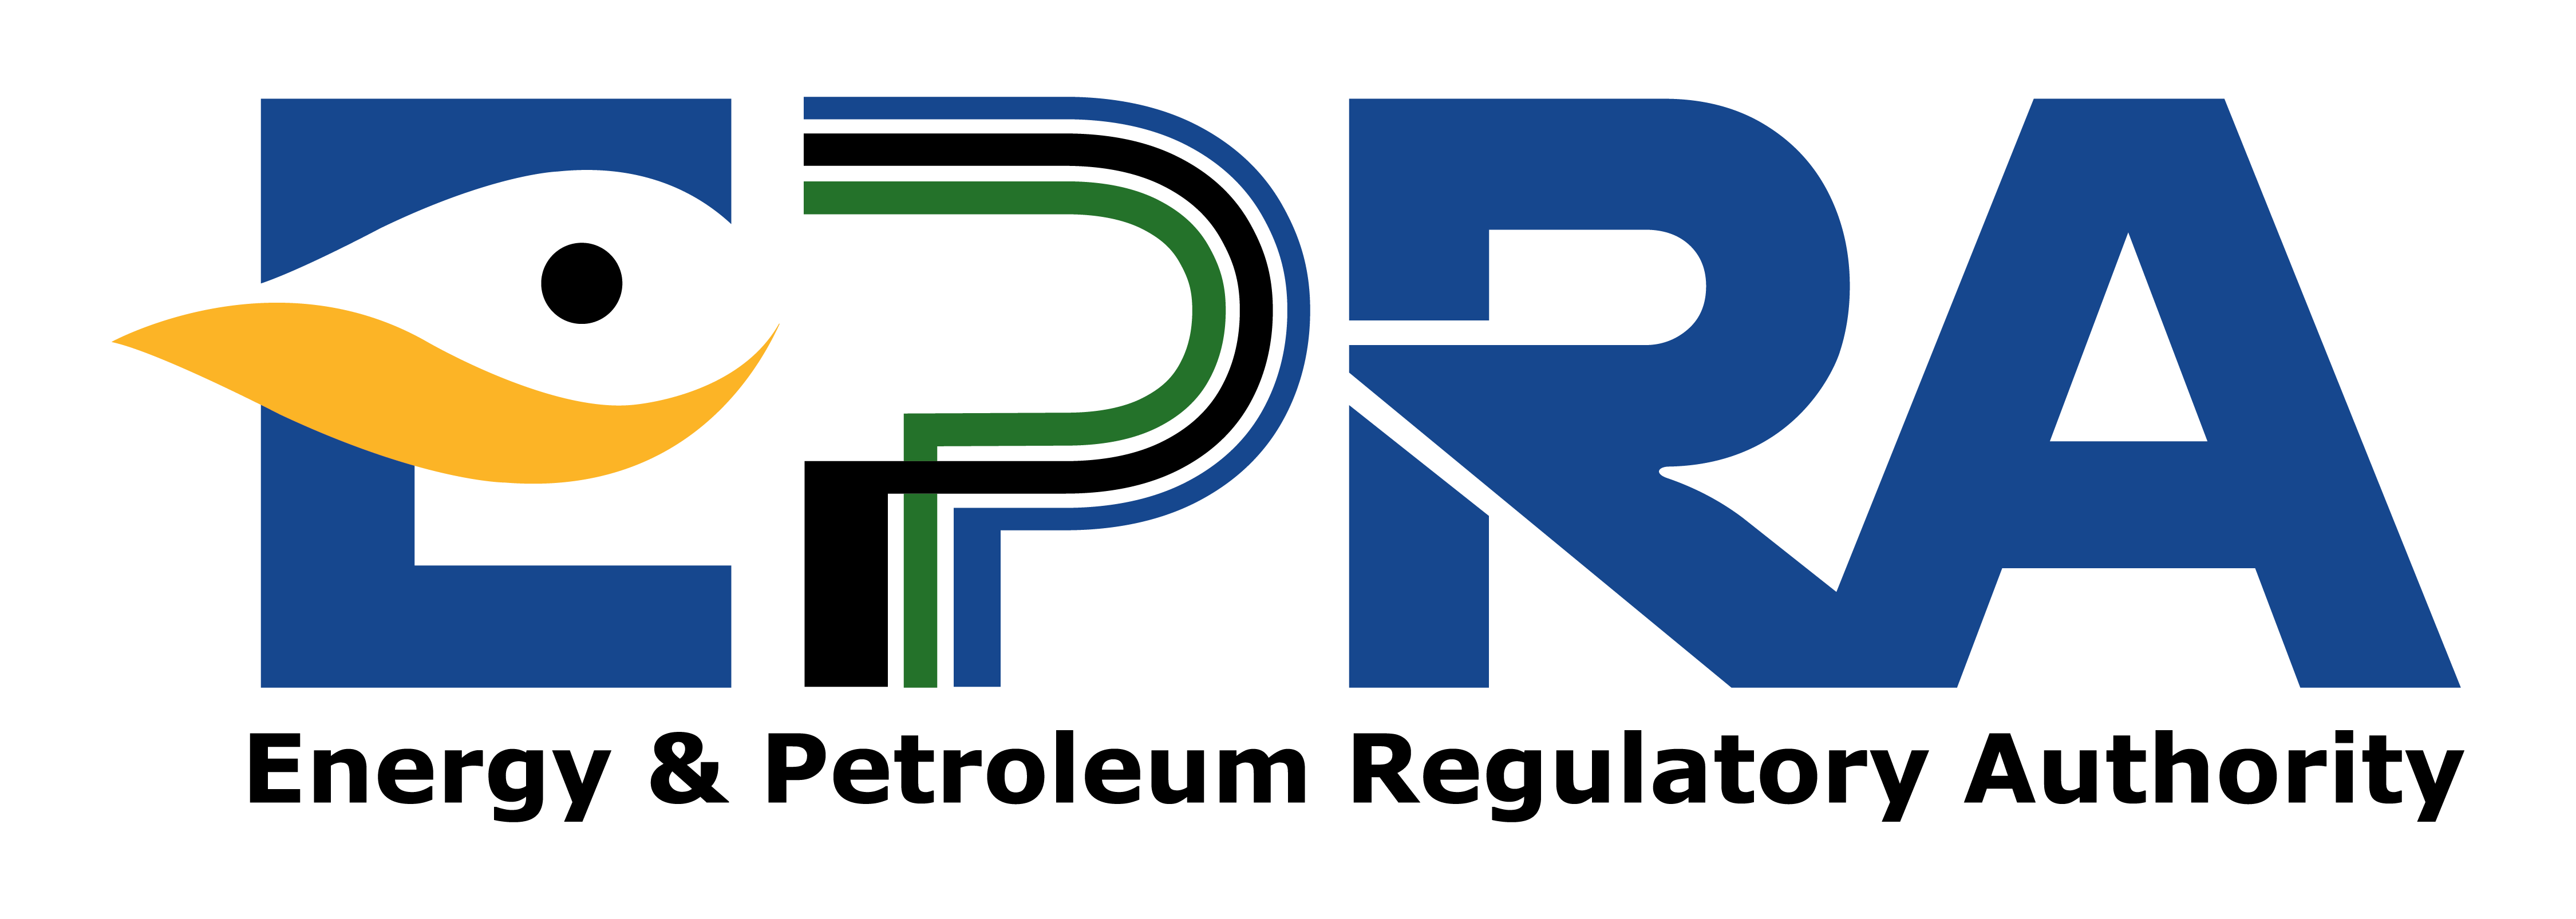 EPRA logo HD